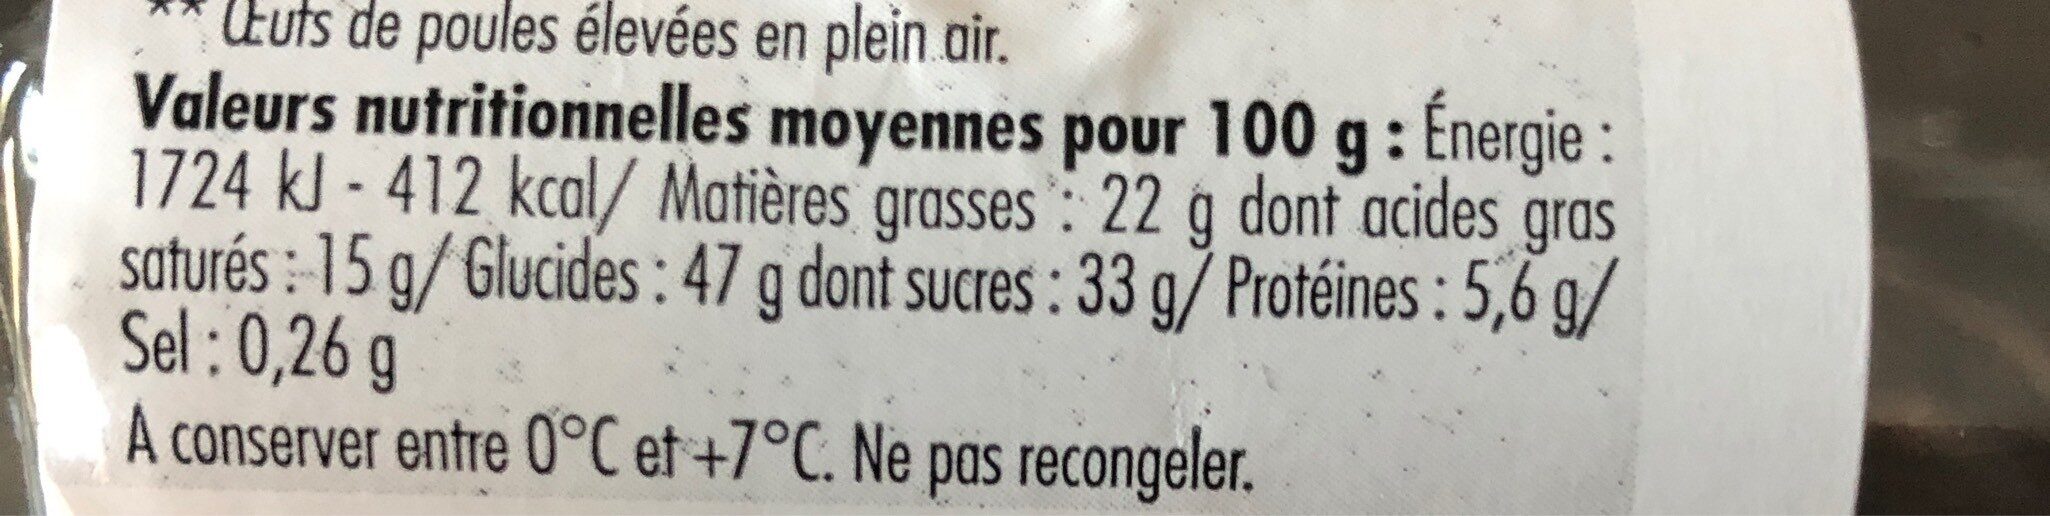 Tartelettes citron meringuées - Nutrition facts - fr